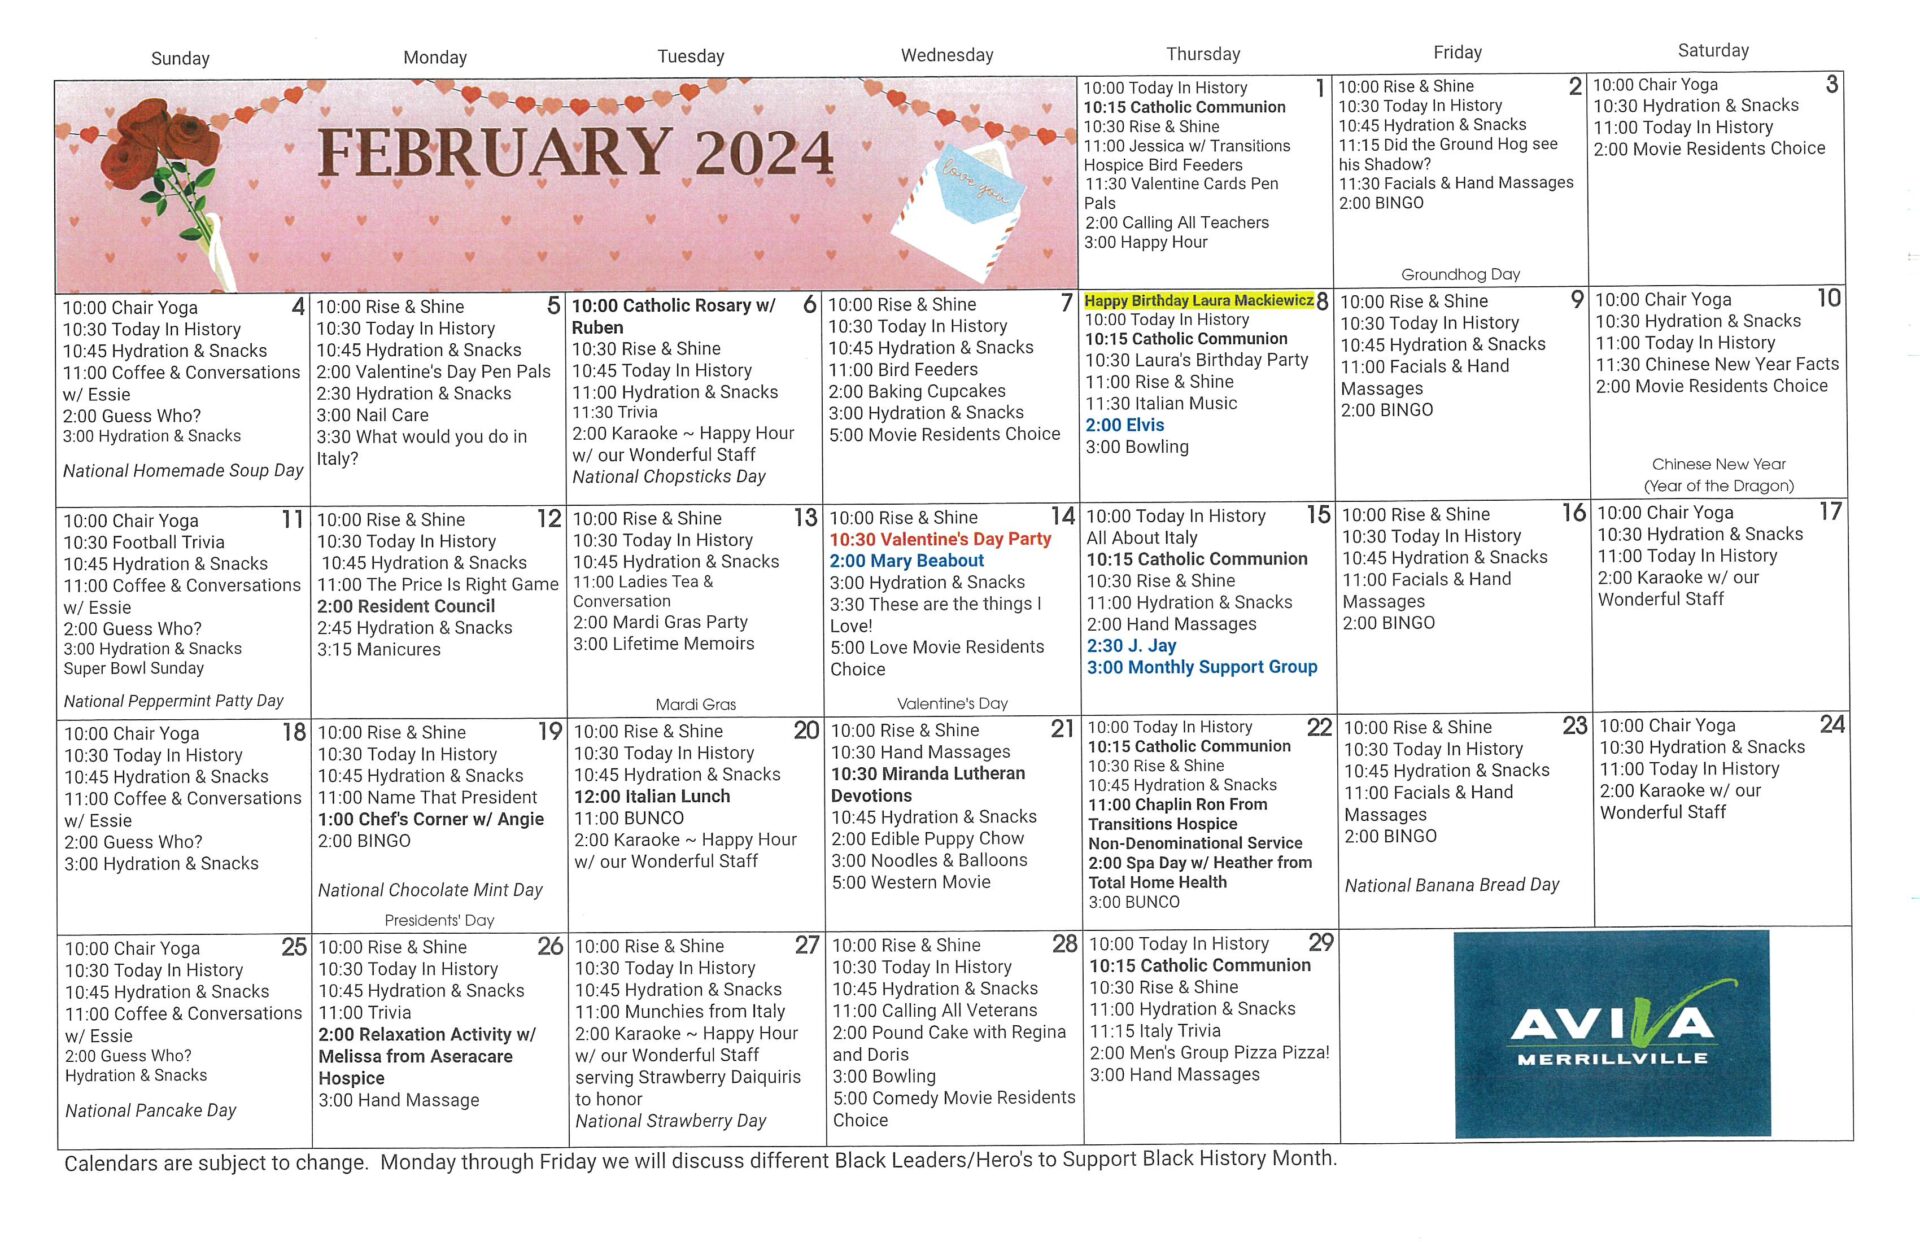 Aviva Merrillville February 2024 Event Calendar